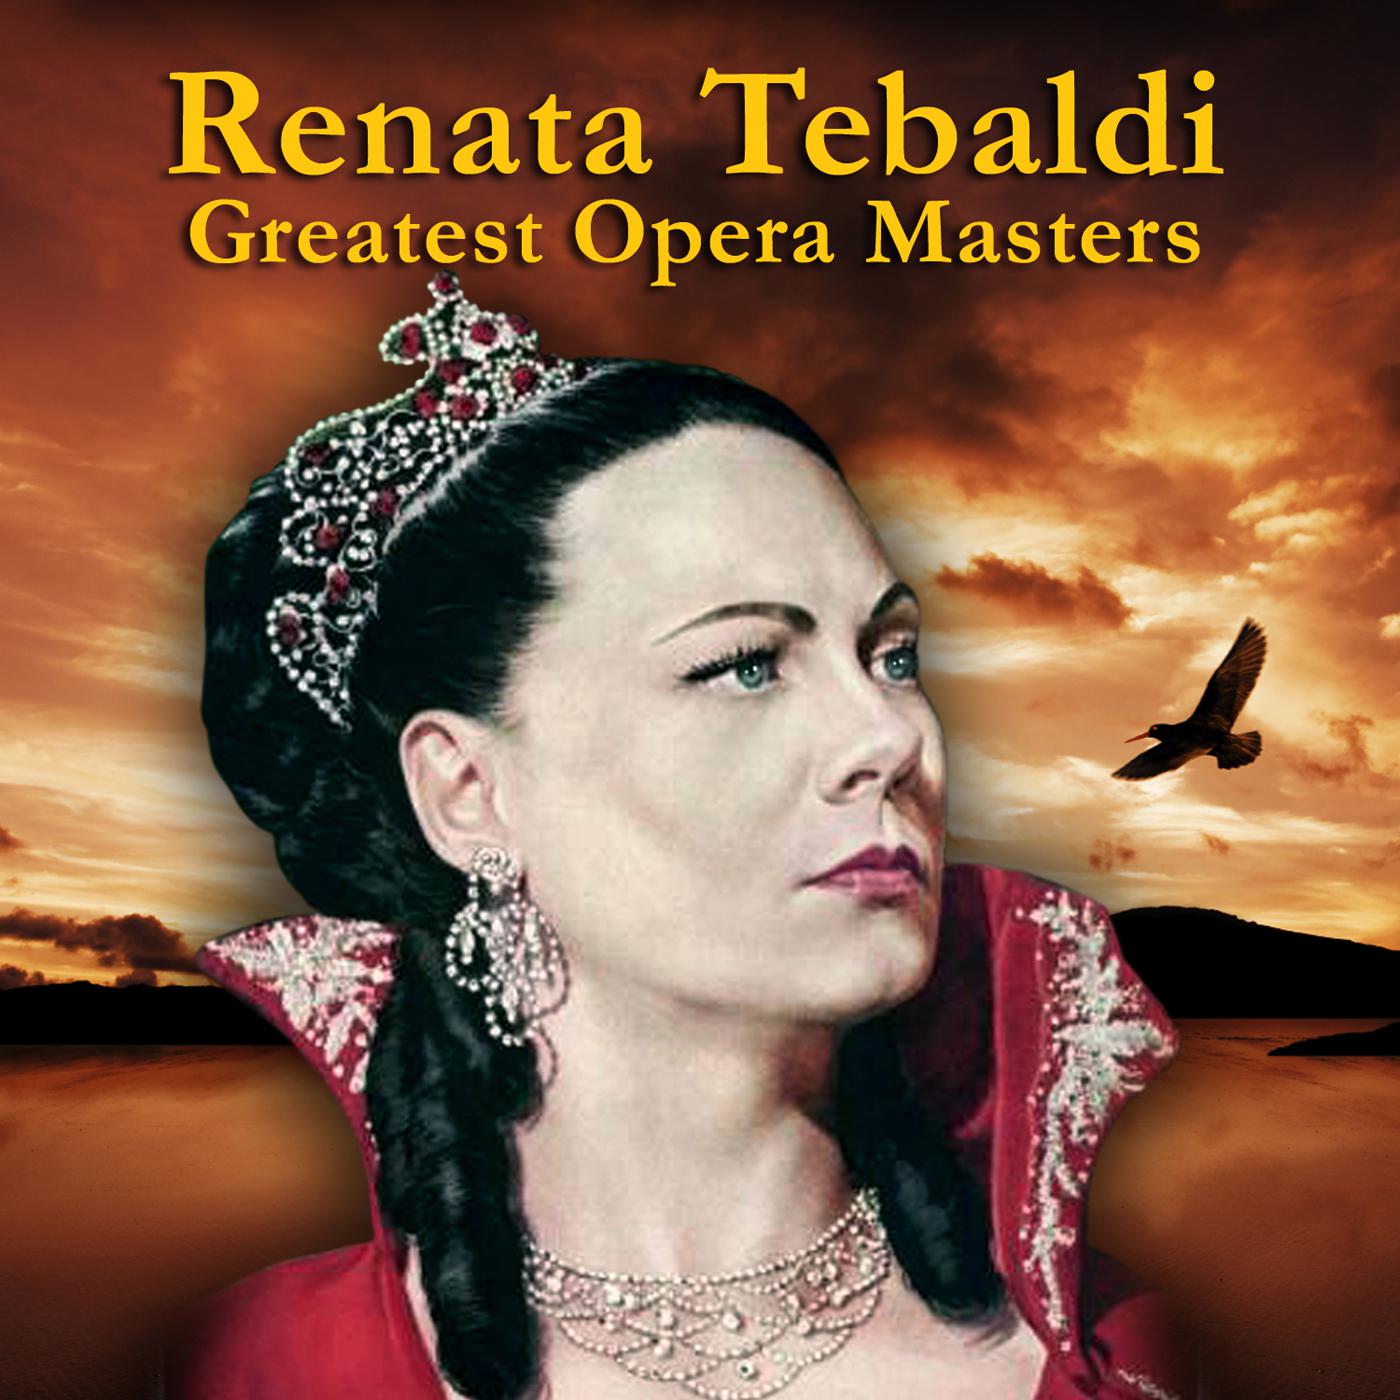 La Traviata: Un di felice, eterea